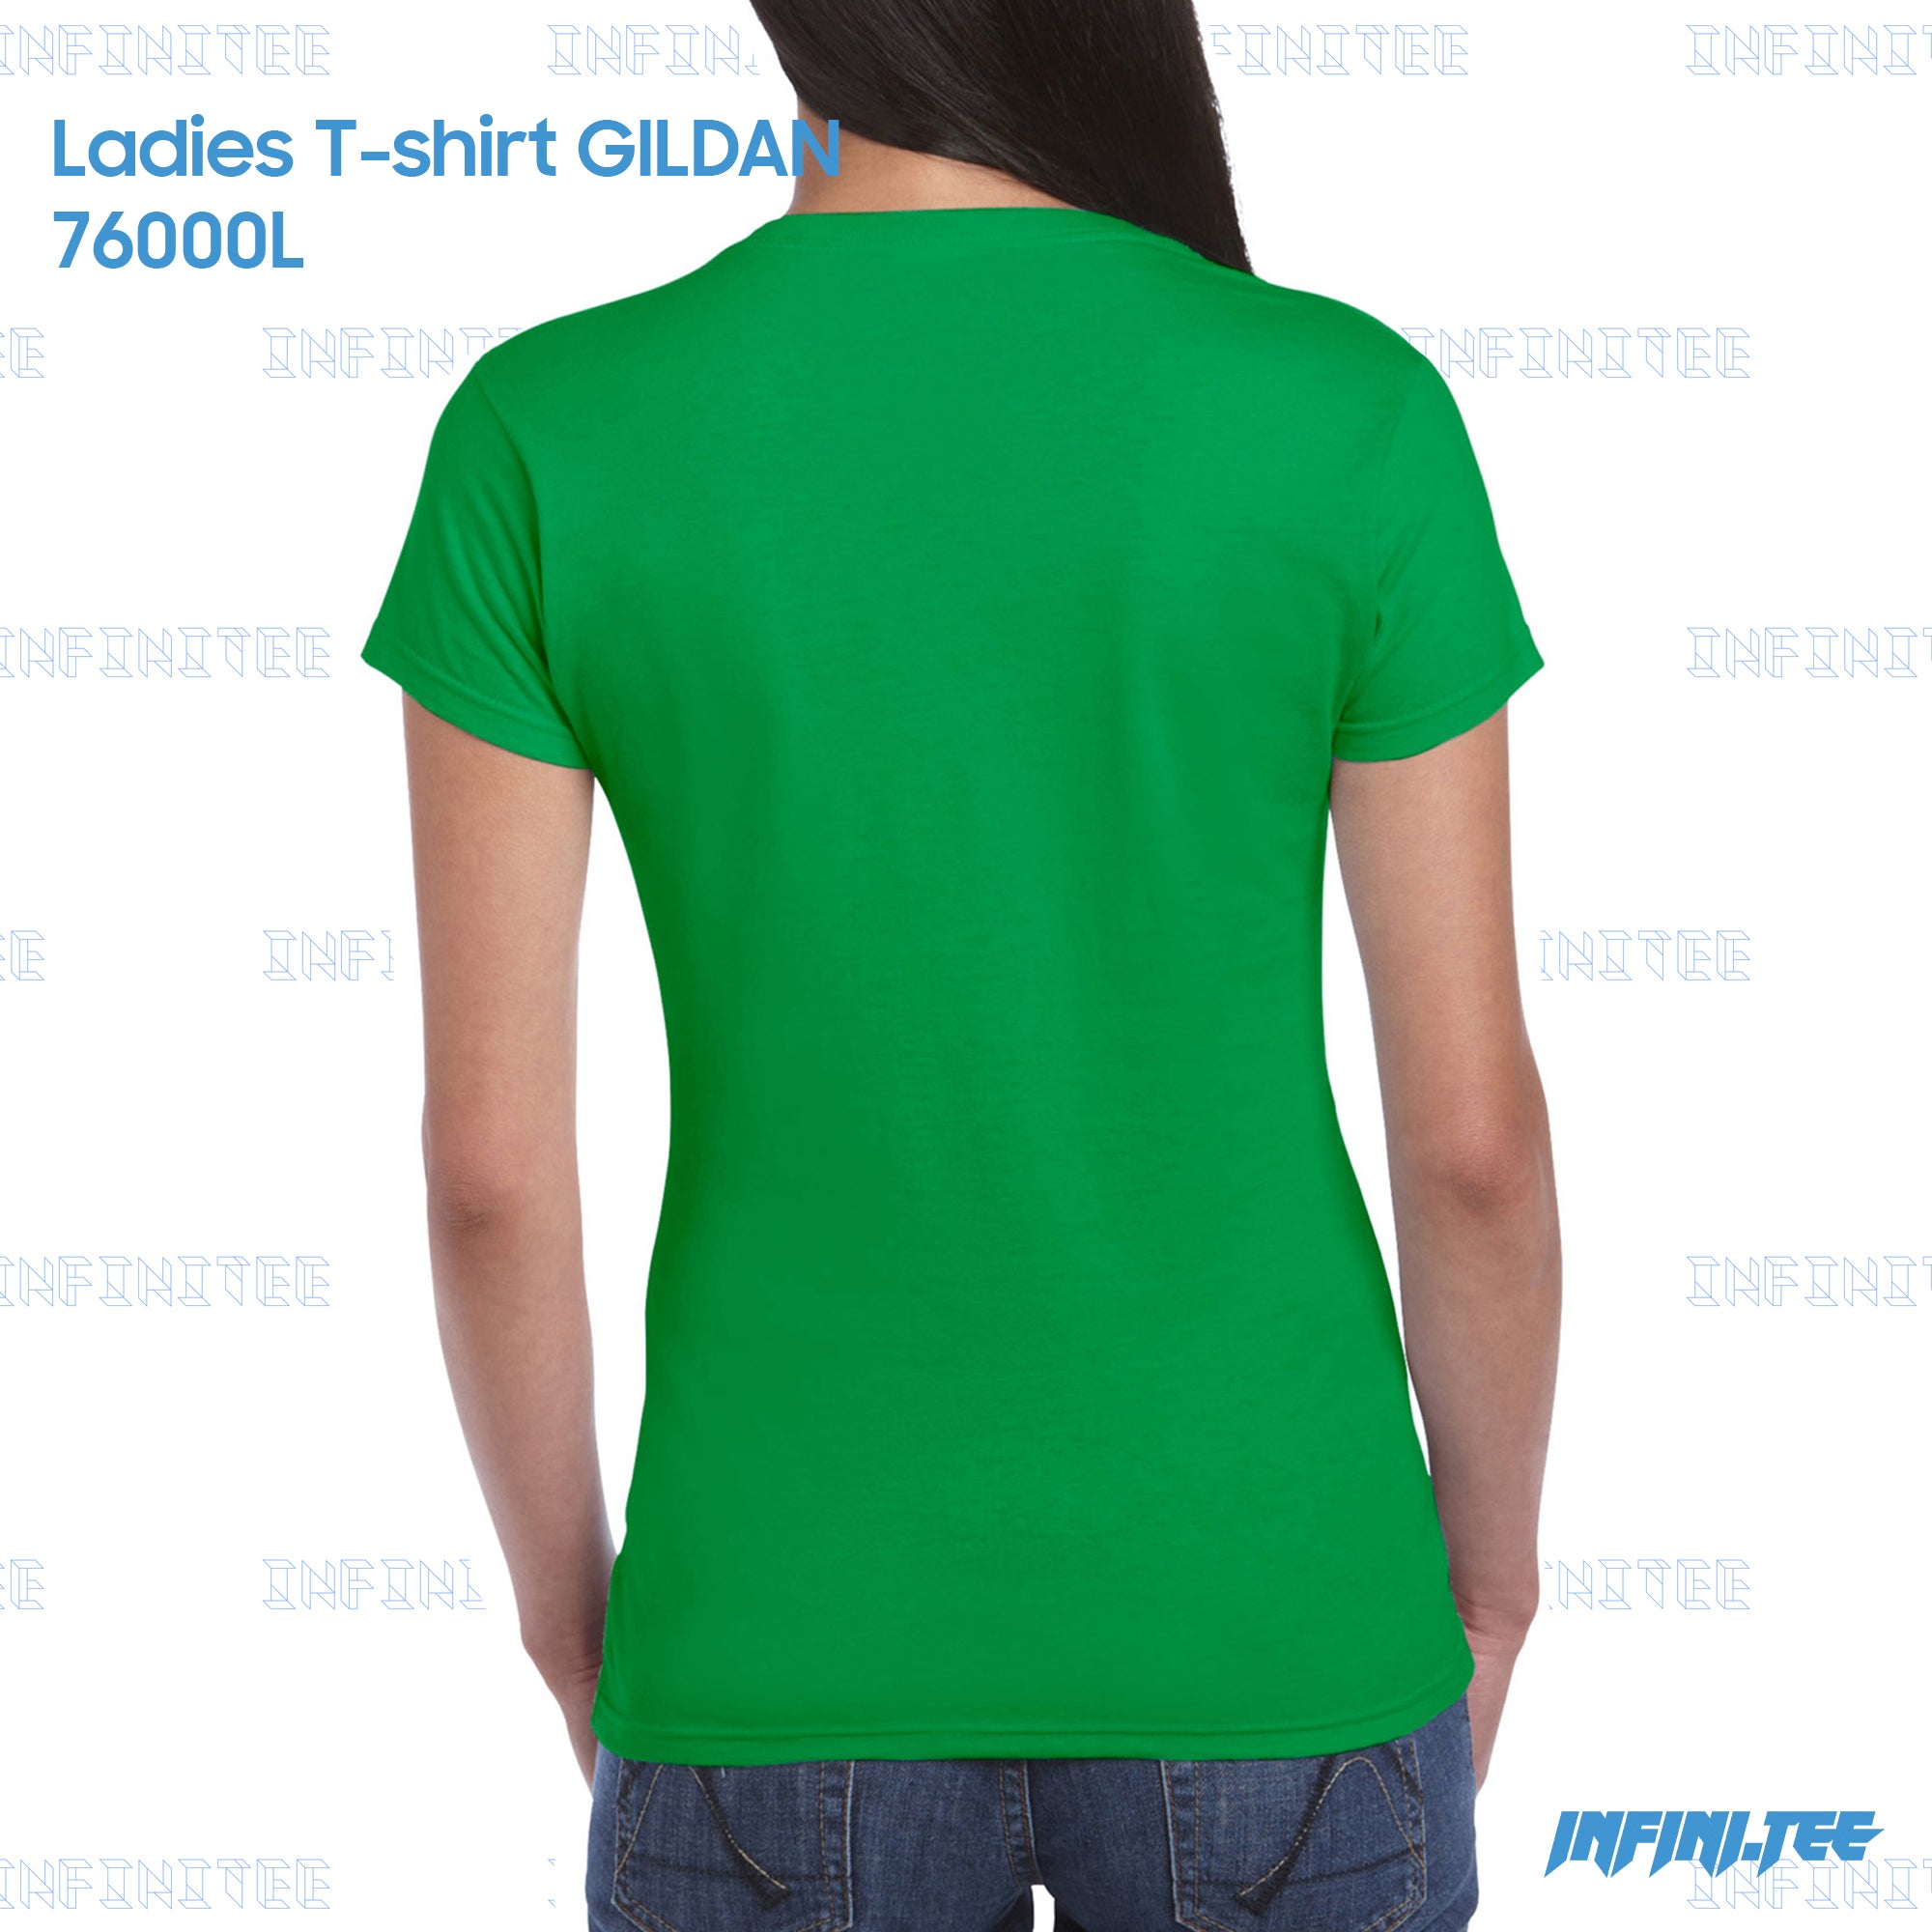 Ladies T-shirt 76000L GILDAN - IRISH GREEN